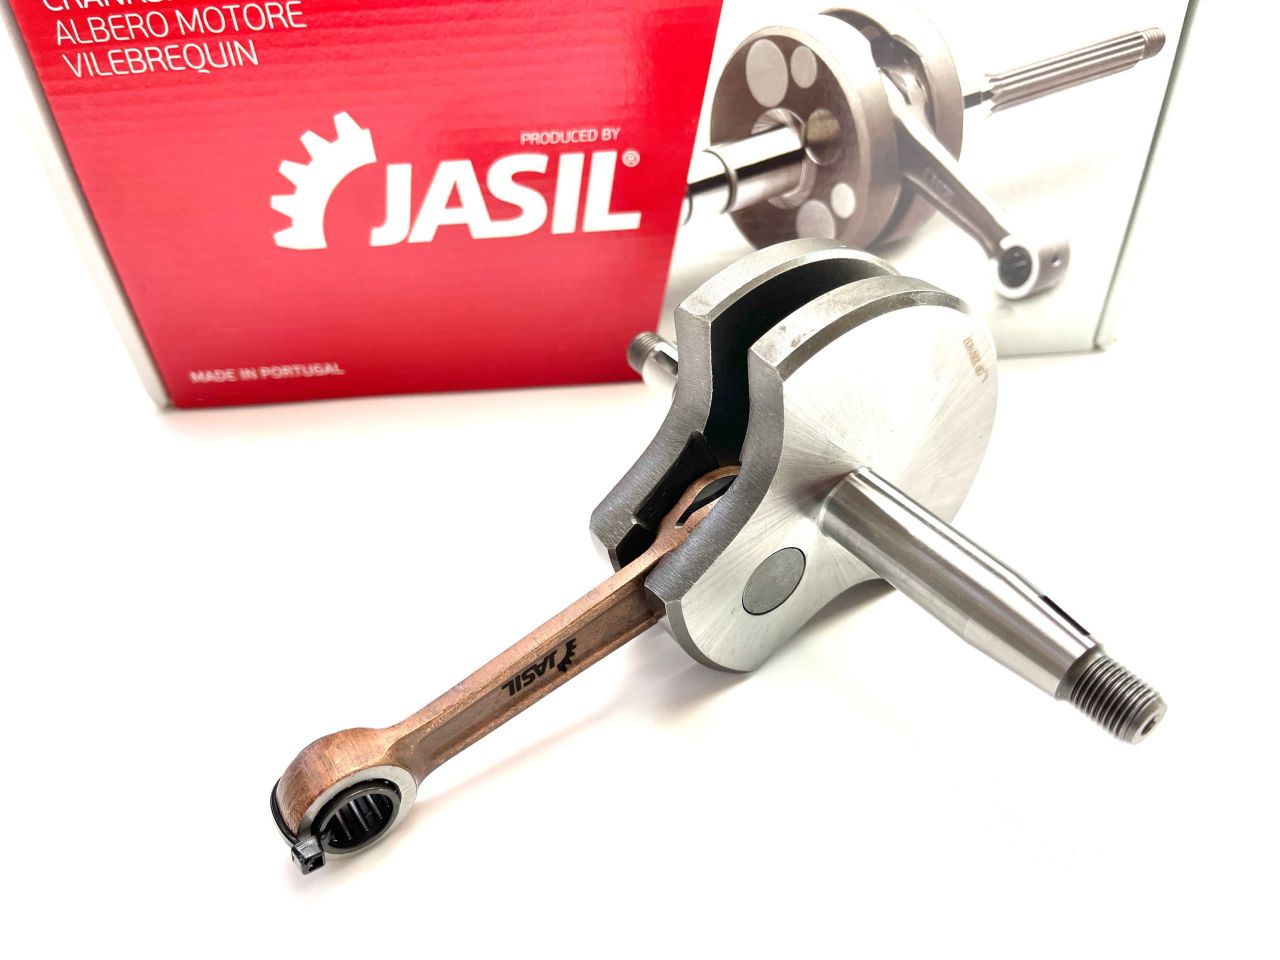 JASIL Kurbelwelle für Sachs 50 Motor E15 mit 2 und 3 Gang von - TOP RACING von Jasil